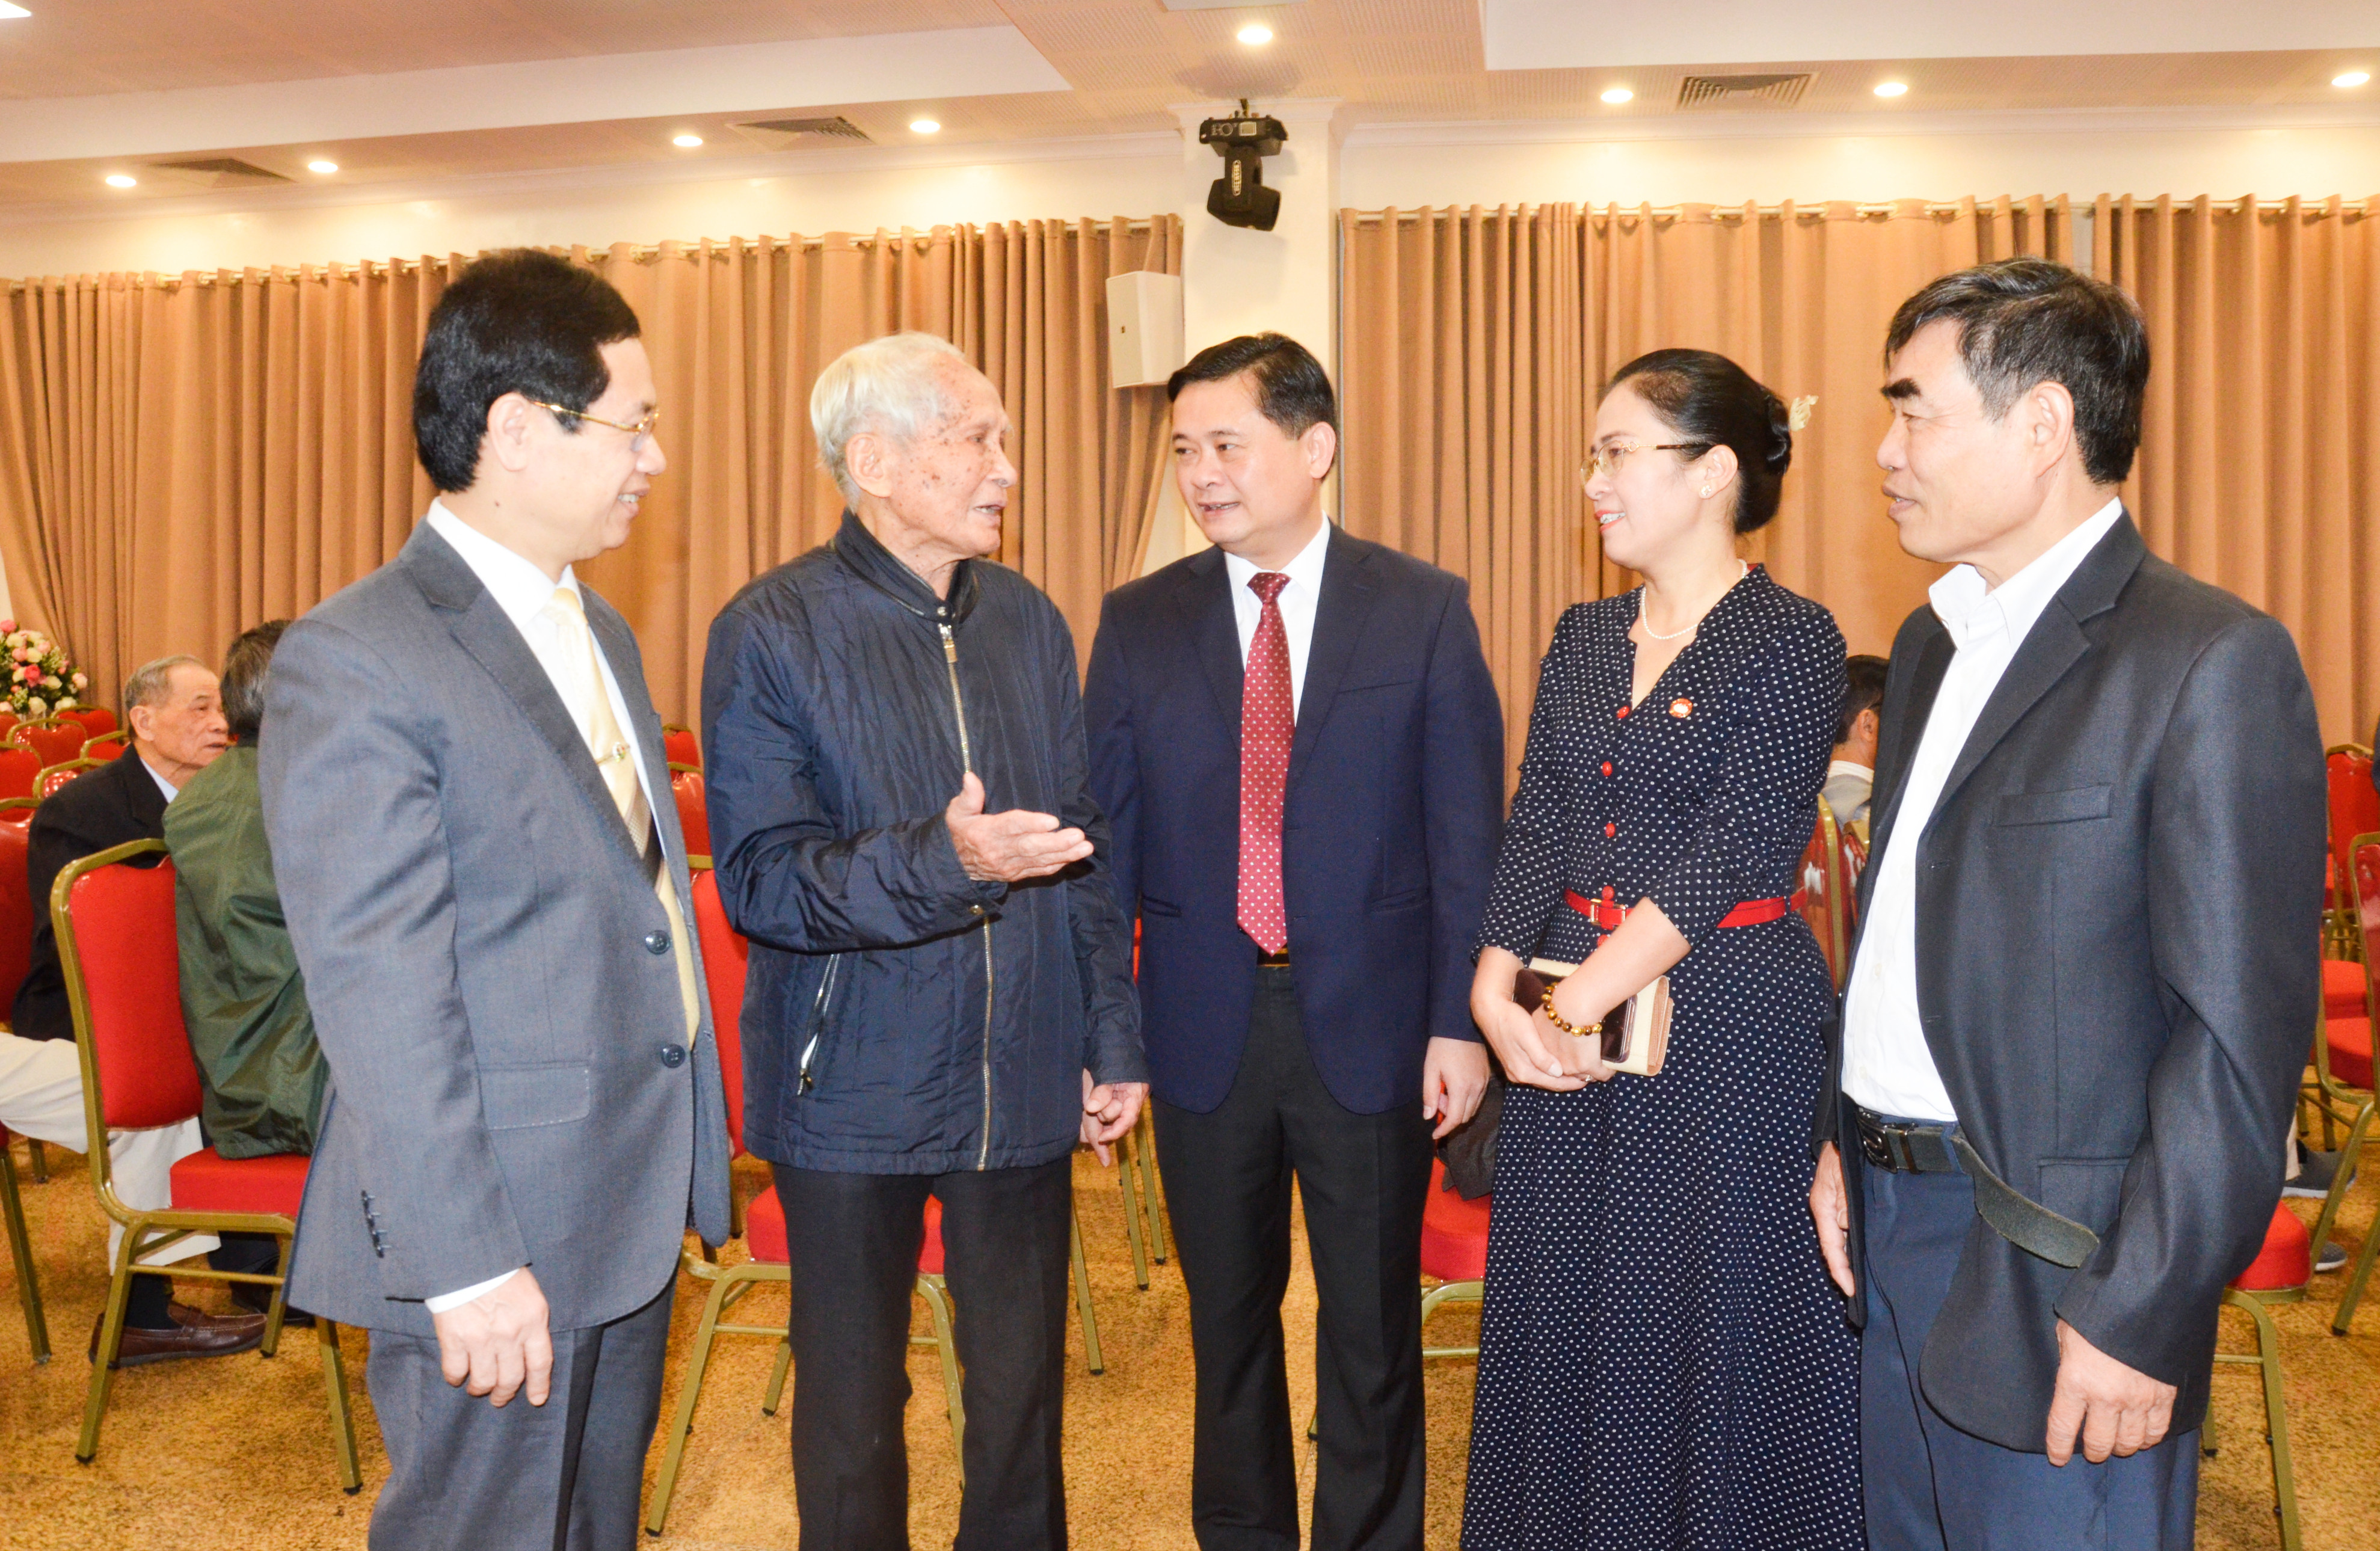 Các đồng chí lãnh đạo tỉnh nói chuyện thân mặt với các đồng hương Nghệ An tại Hà Nội. Ảnh: Thanh Lê